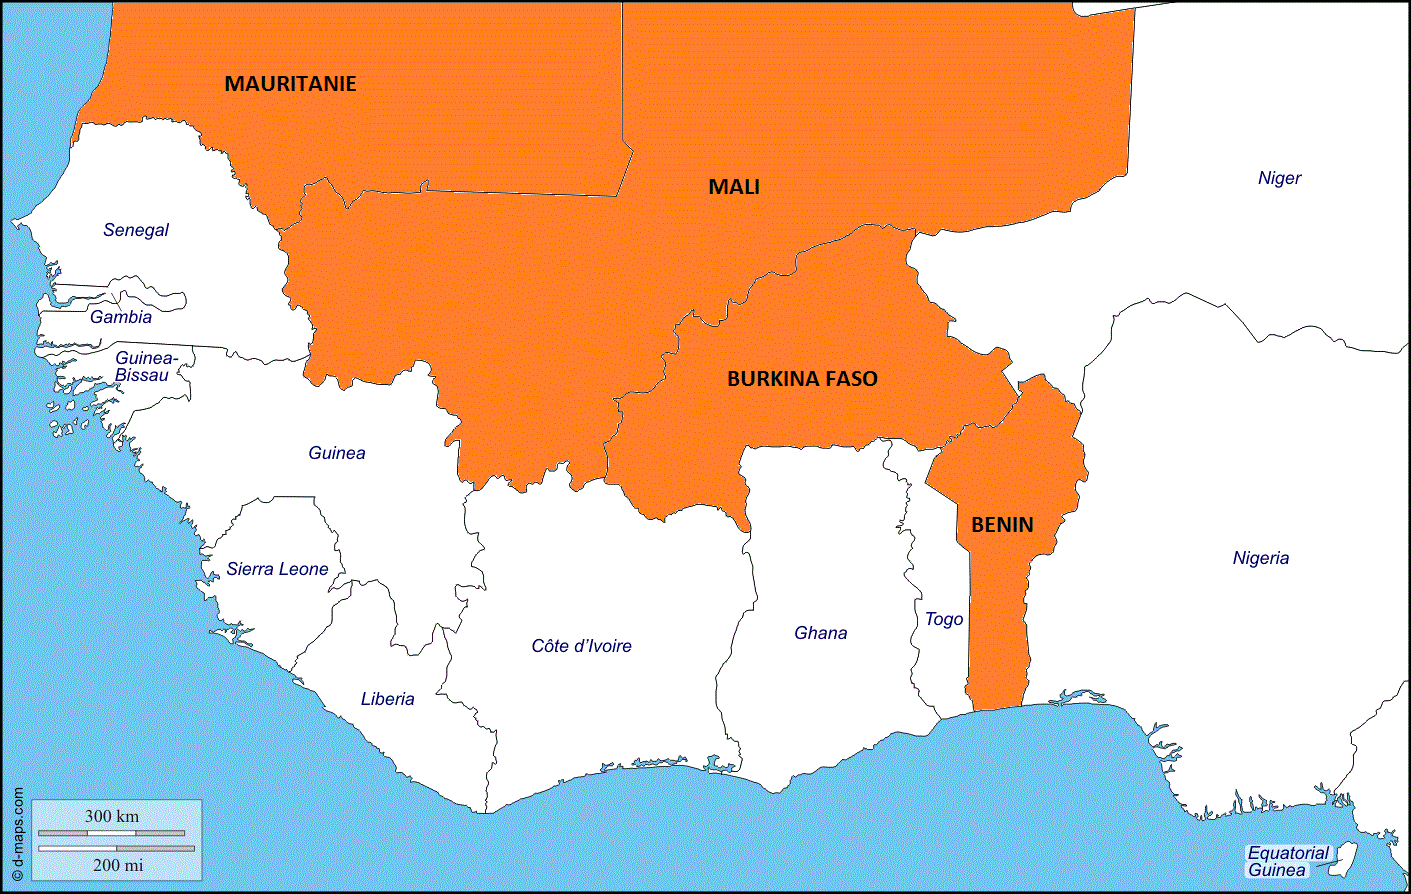 Benin Cameroun Mali Mauritanie ReMeD